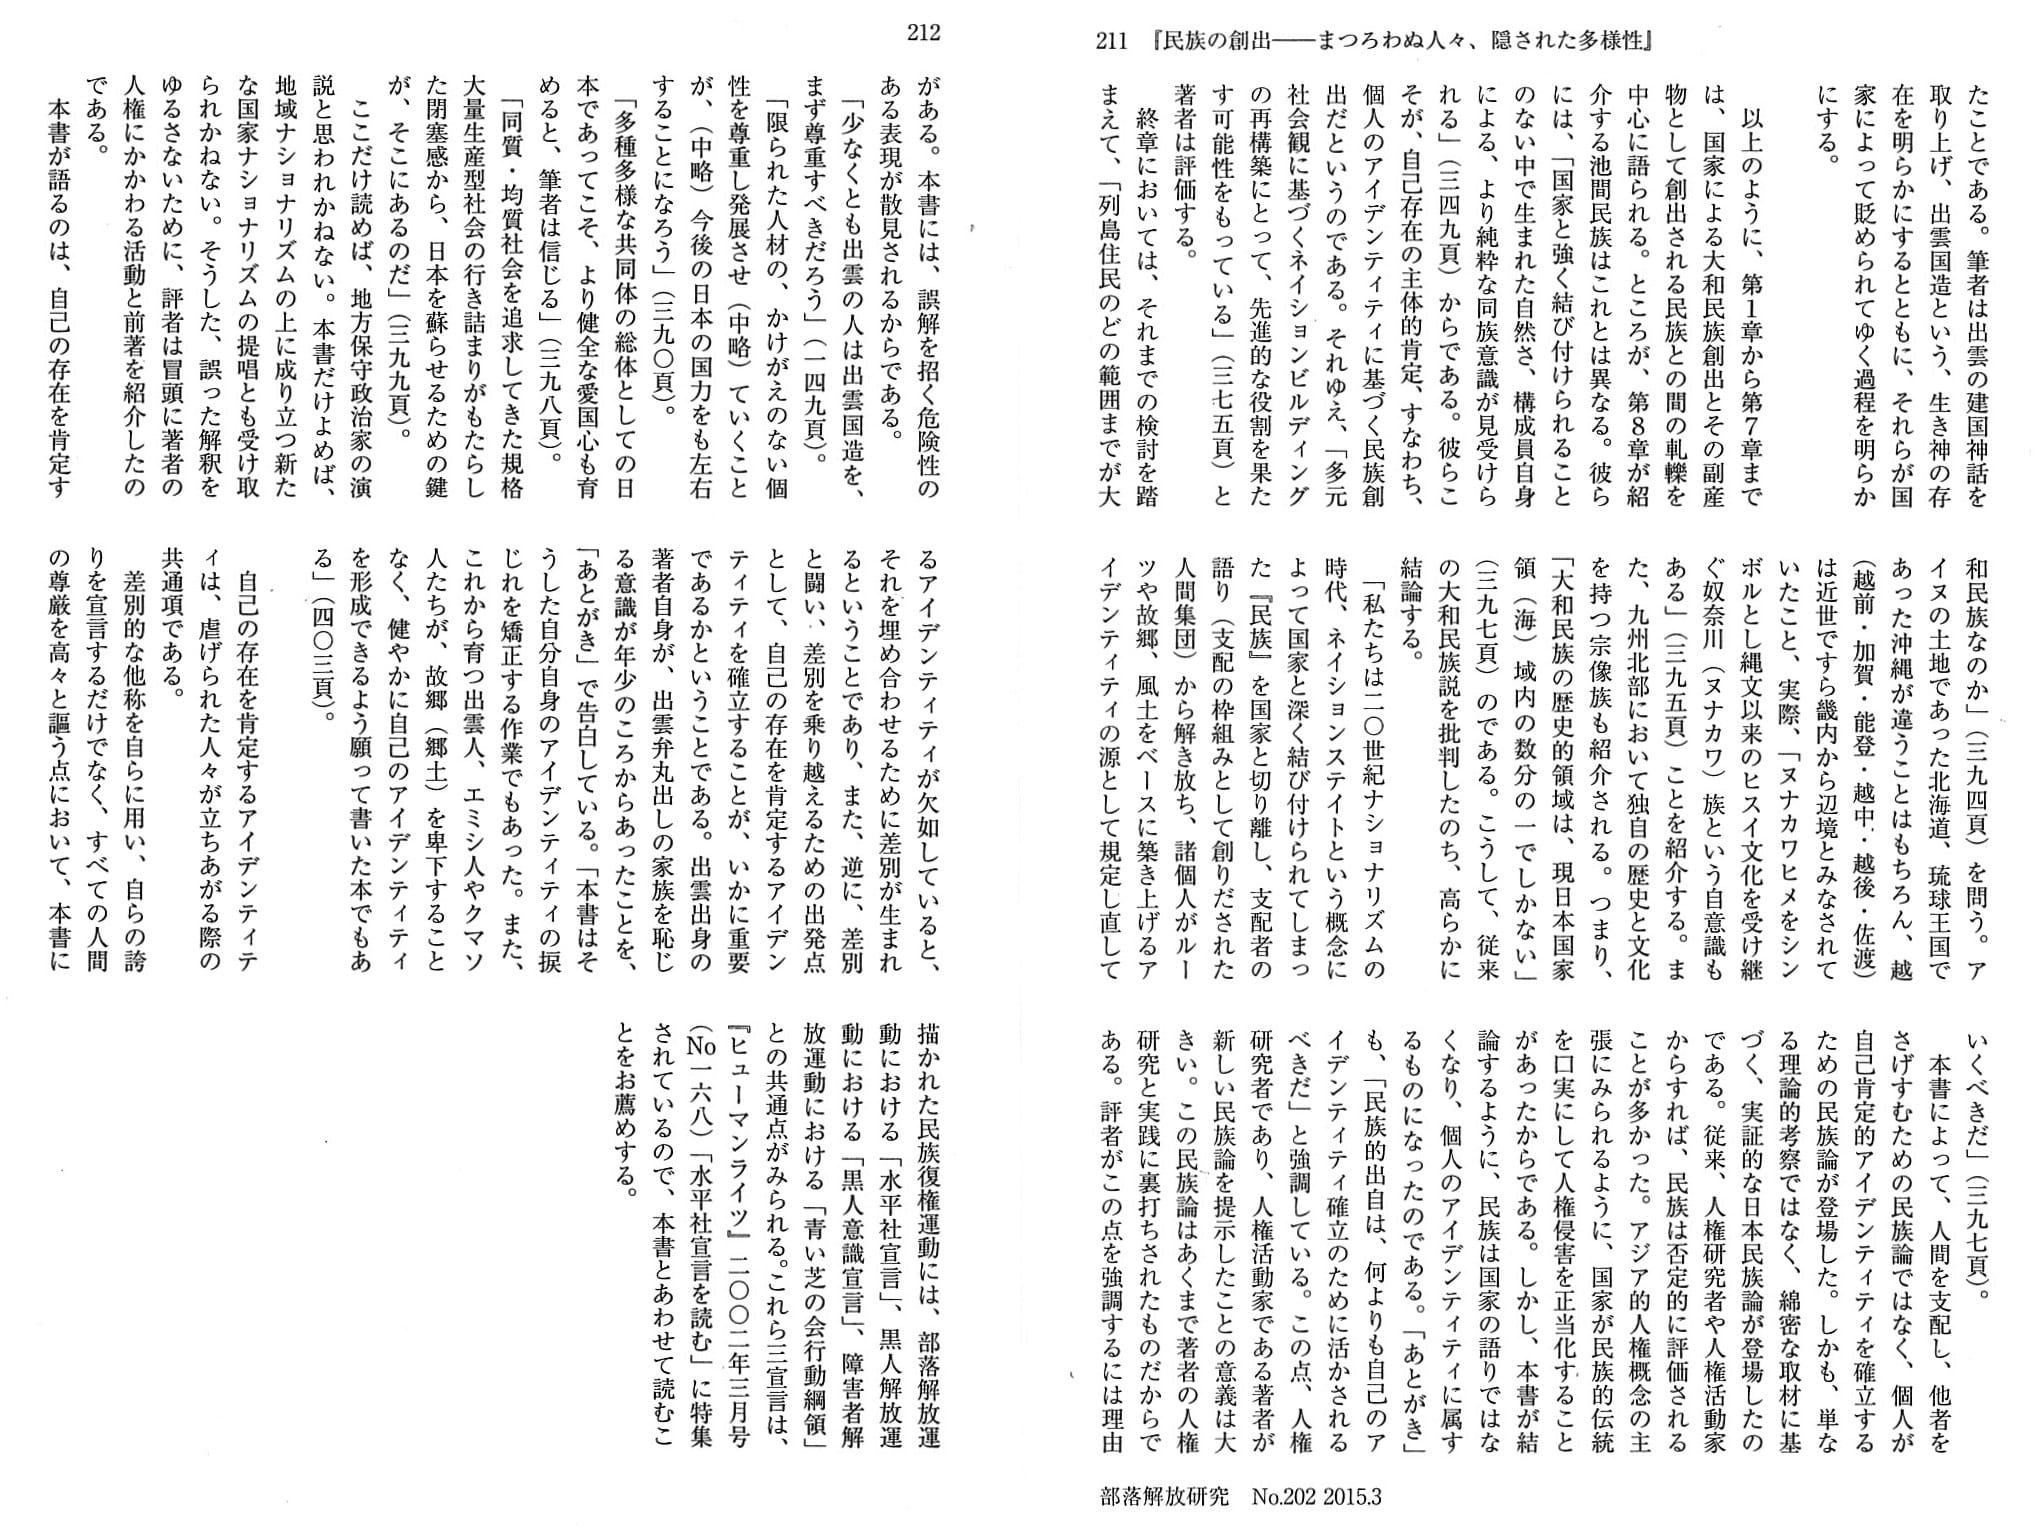 『部落解放研究』No.202, 2015.3(2).jpg